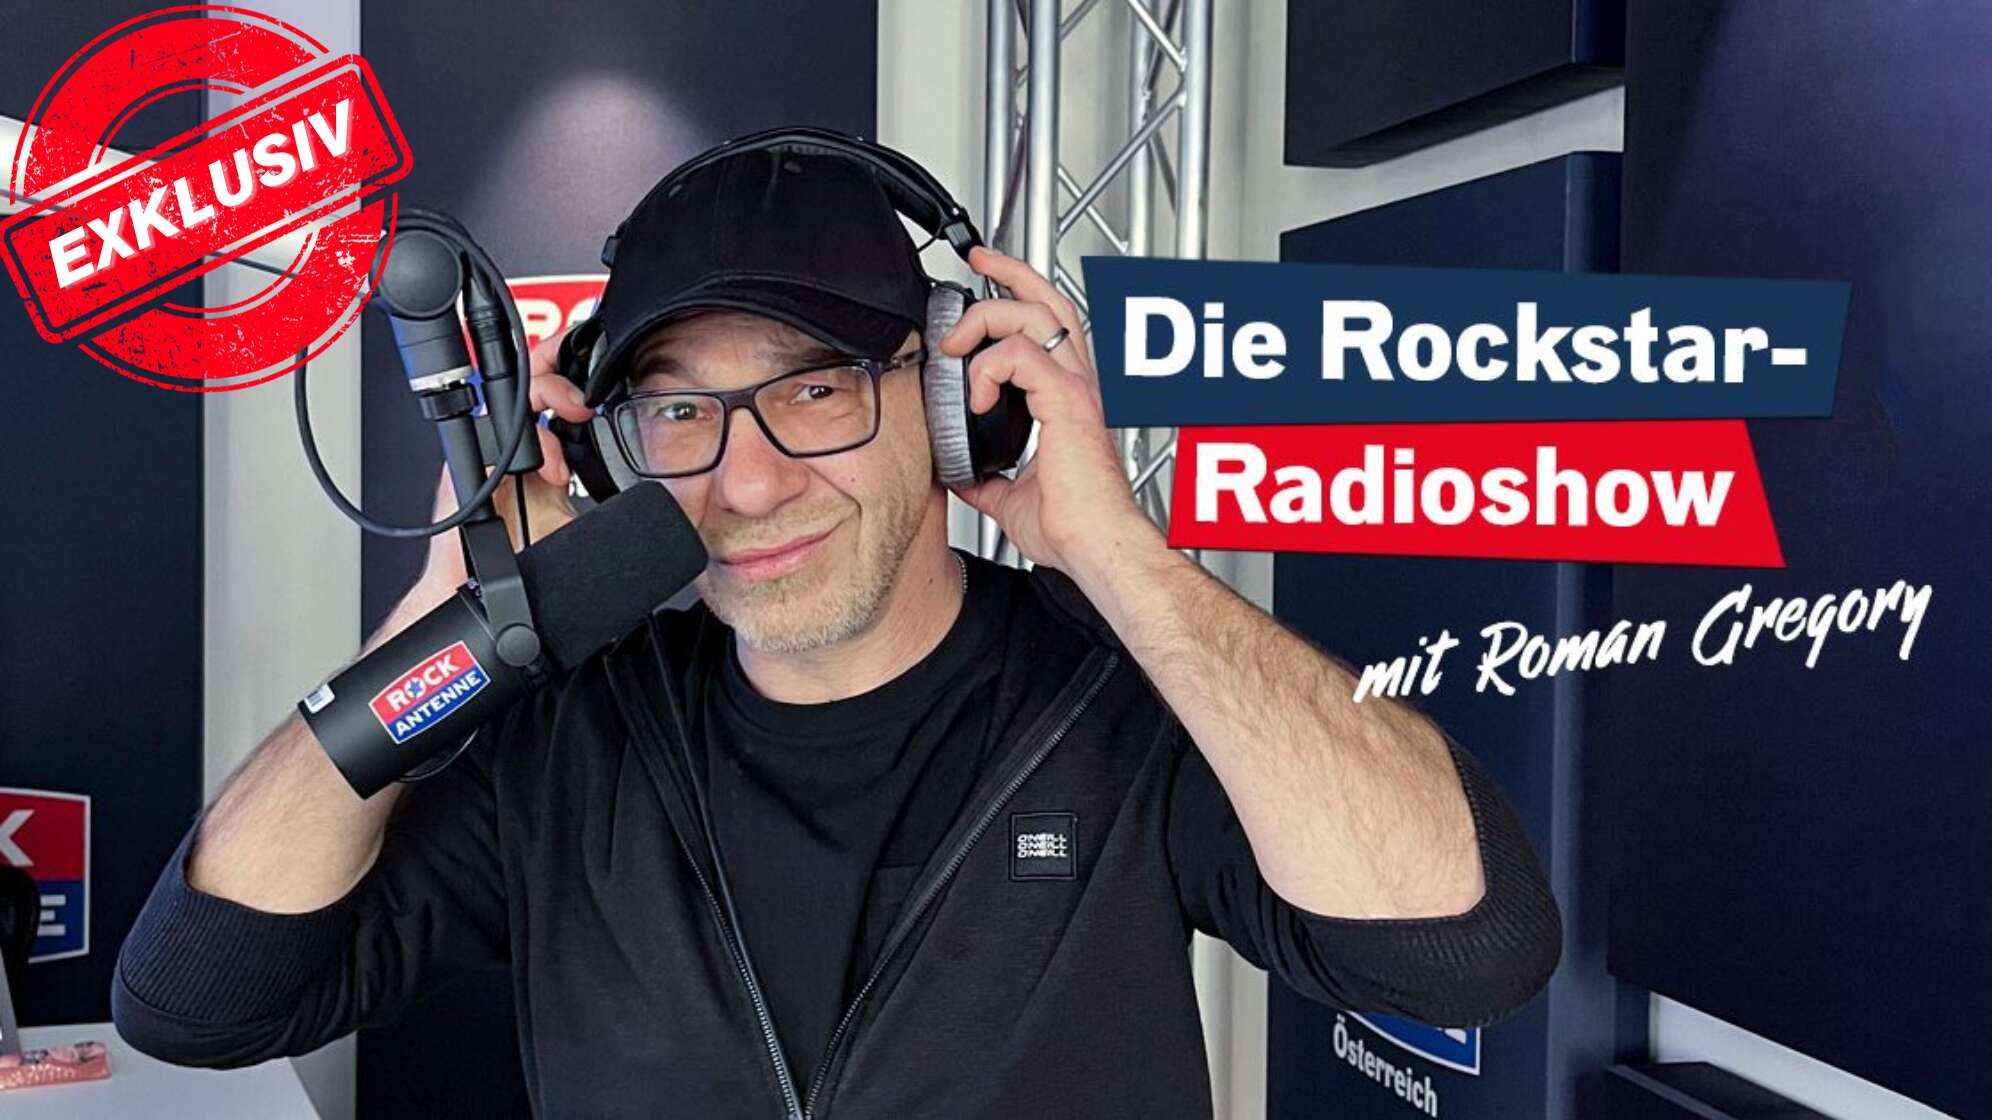 Die Rockstar Radioshow mit Roman Gregory zum Nachhören